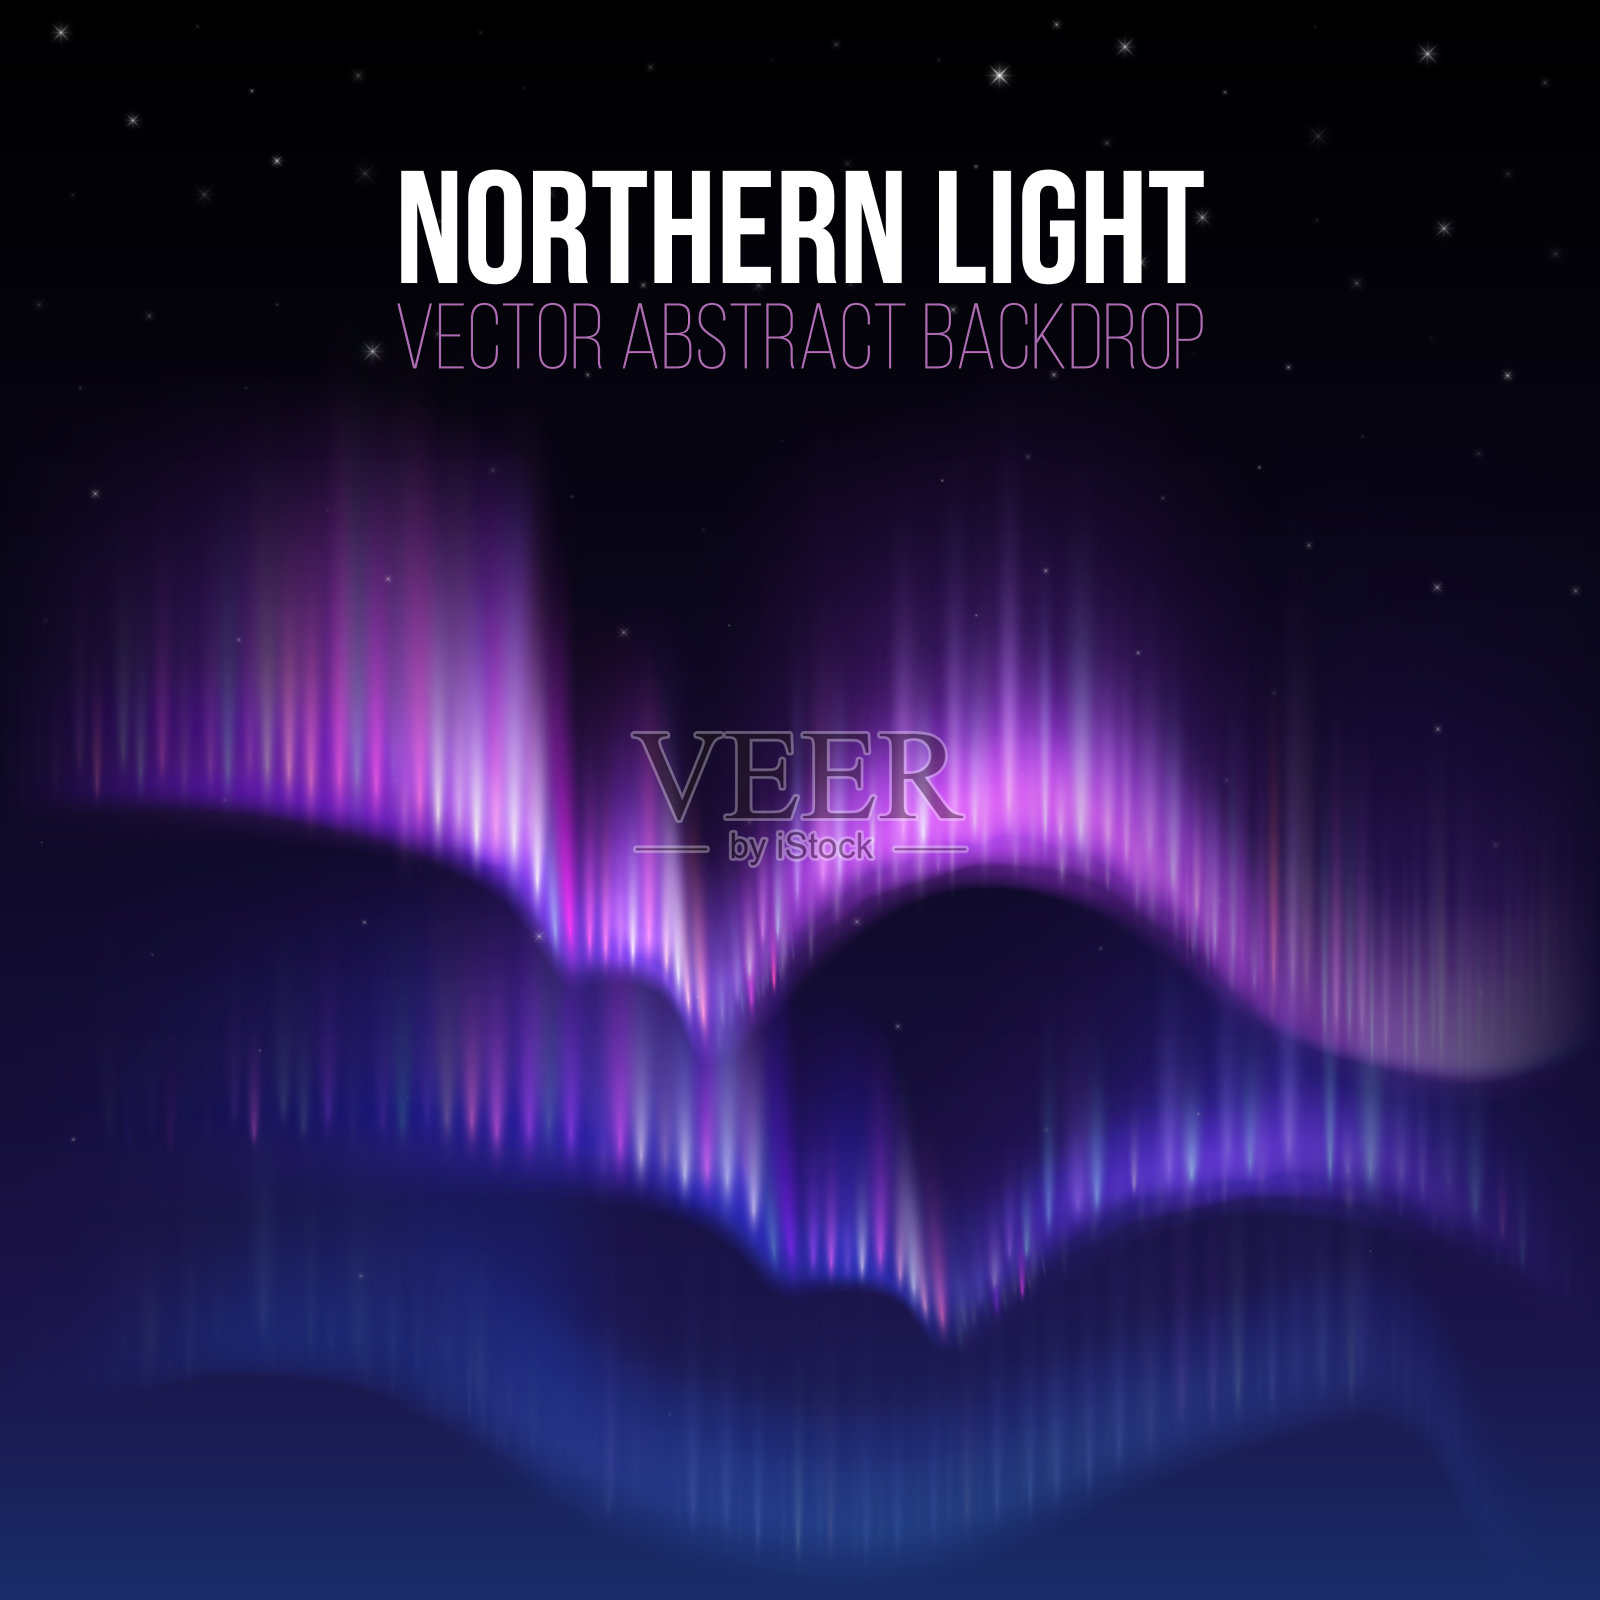 北极光，北极星阿拉斯加矢量背景中的北极光插画图片素材